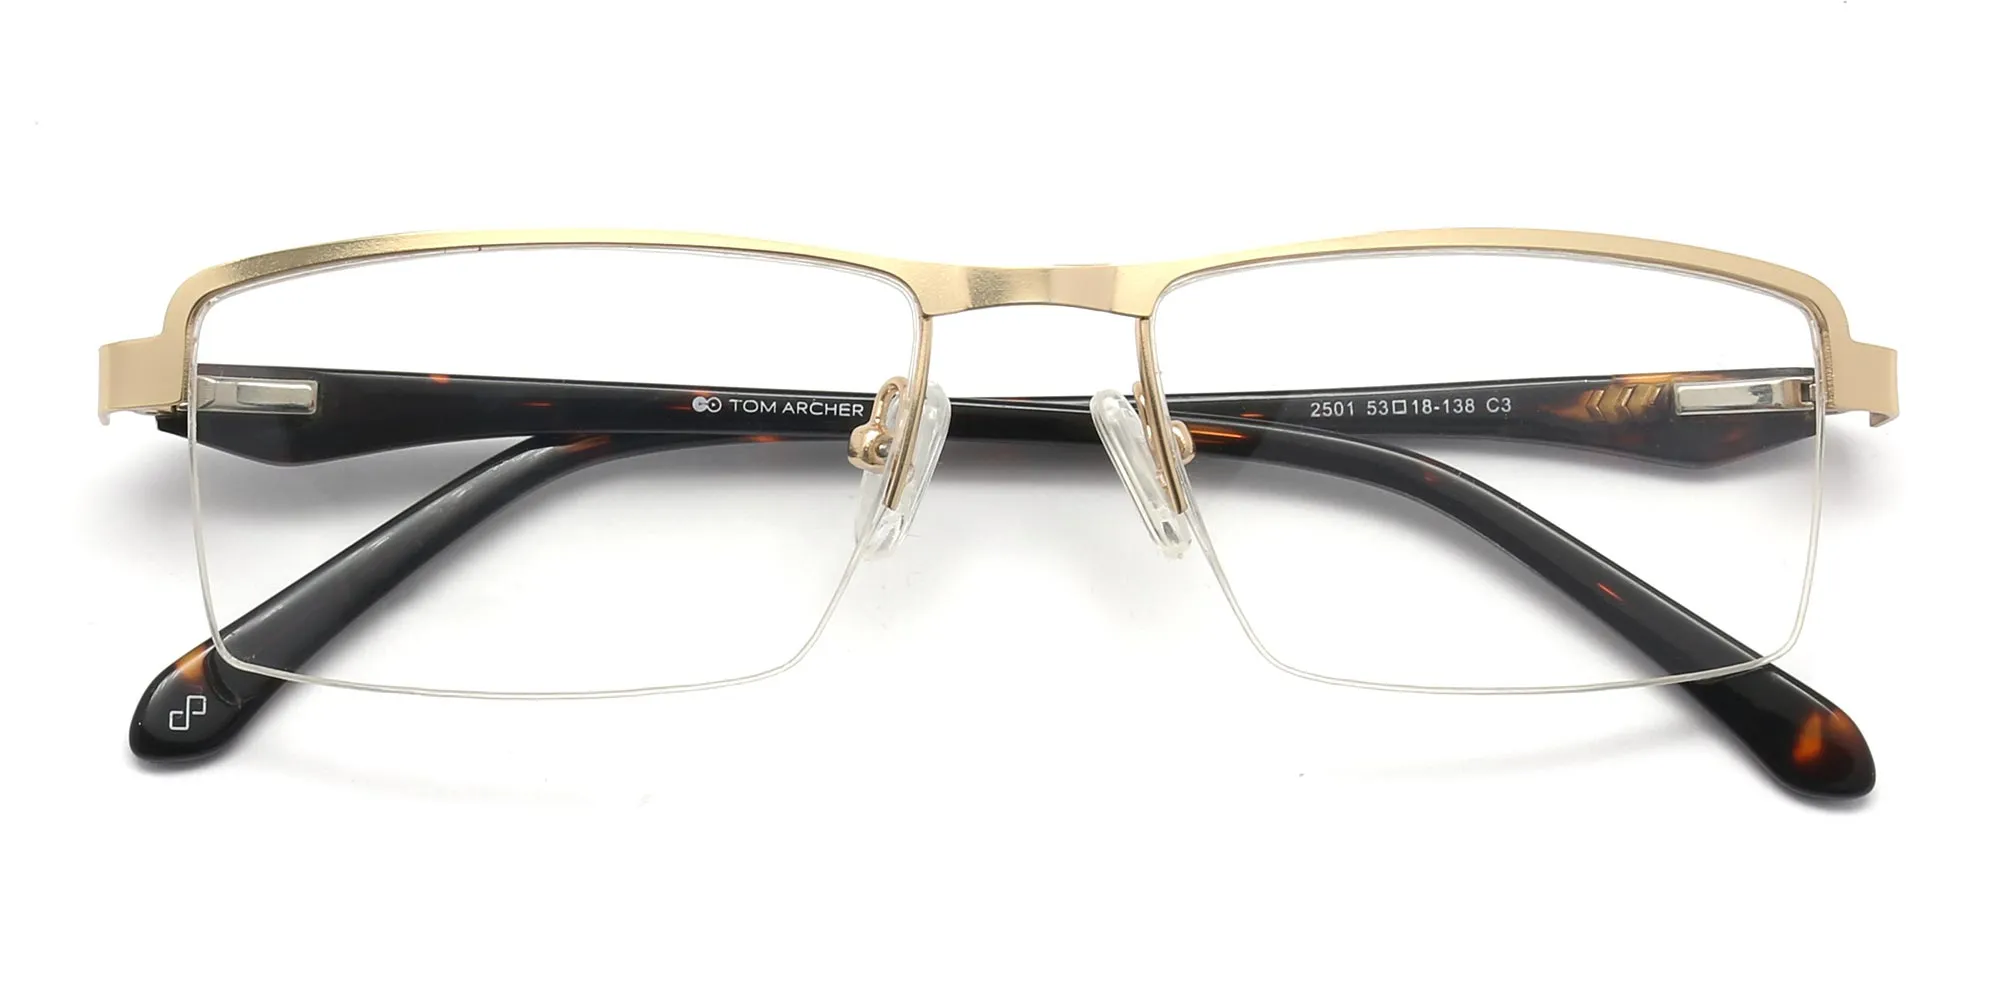 modern reading glasses in gold & tortoiseshell frame-2